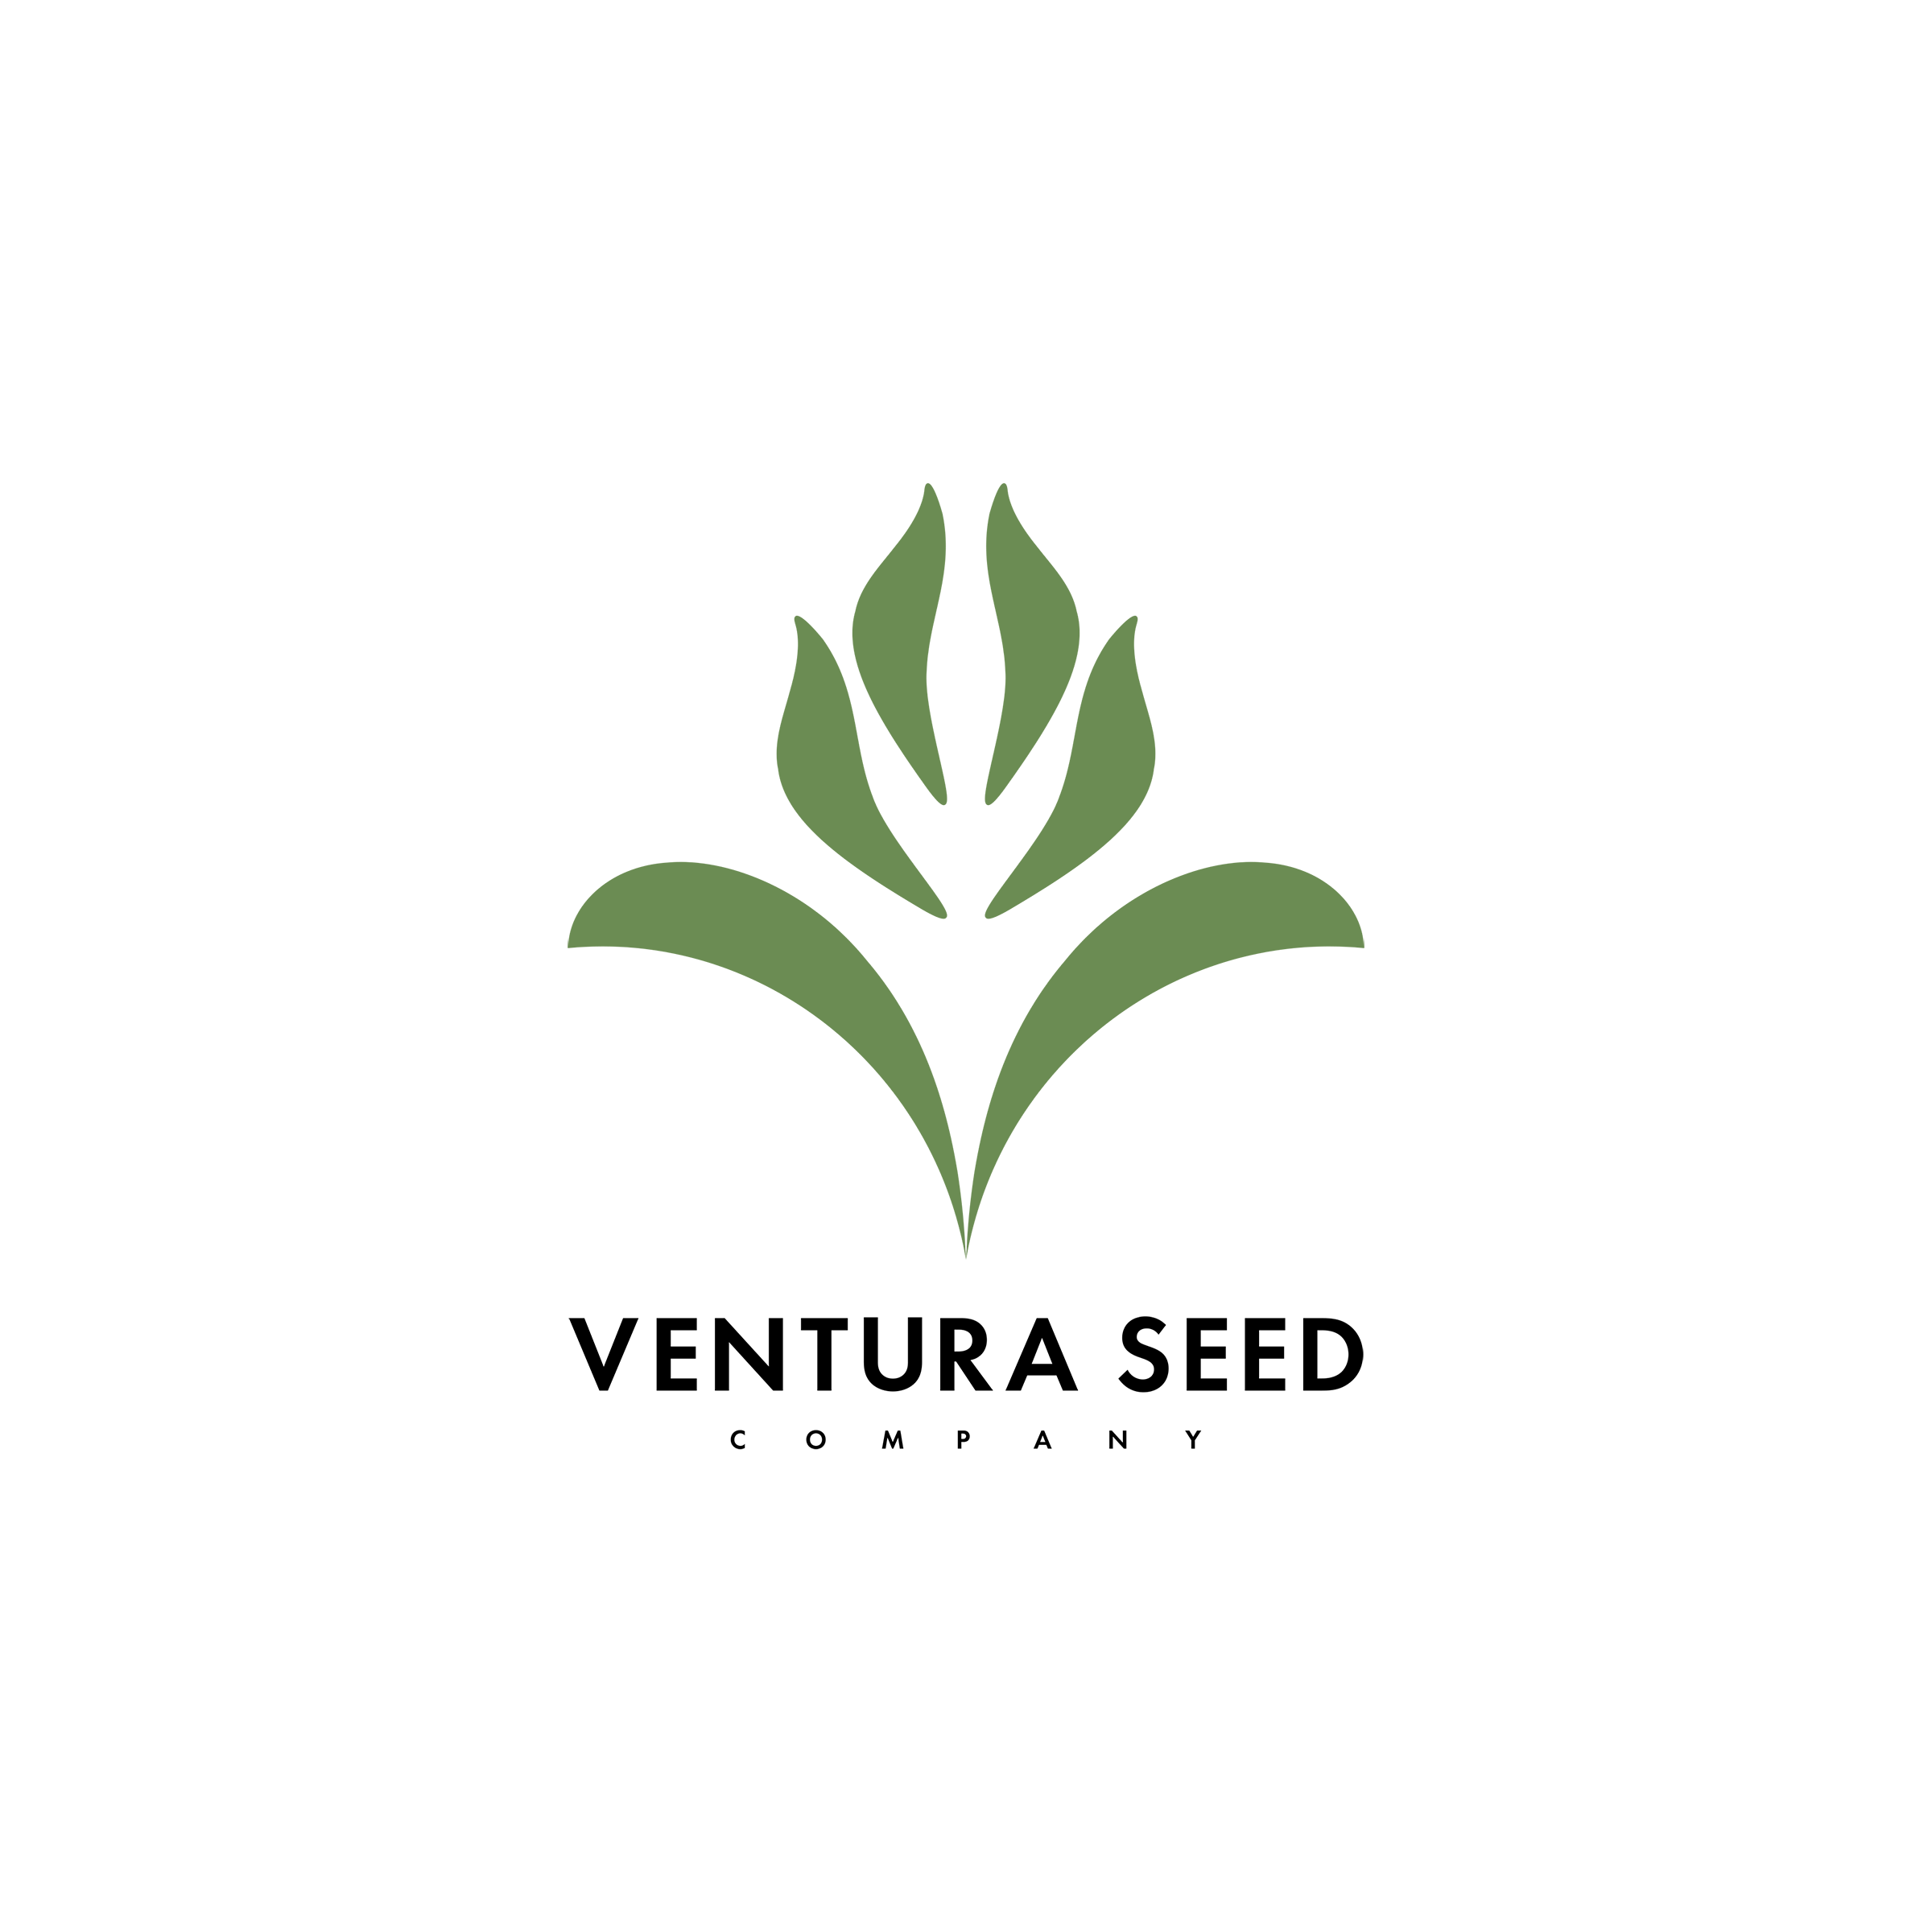 Ventura Seed Company